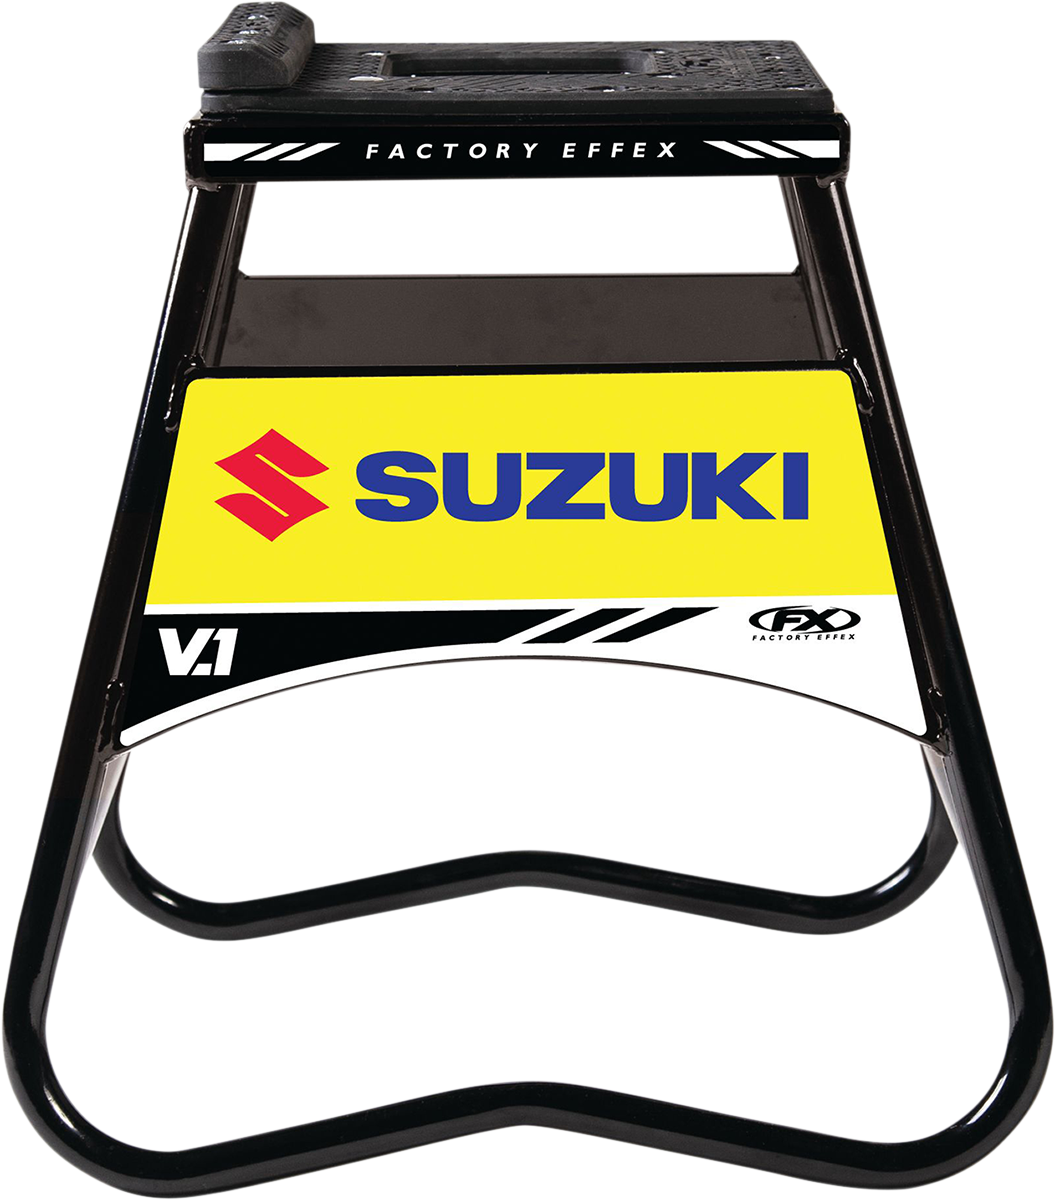 FACTORY EFFEX Bike Stand - Suzuki - Black 24-45400